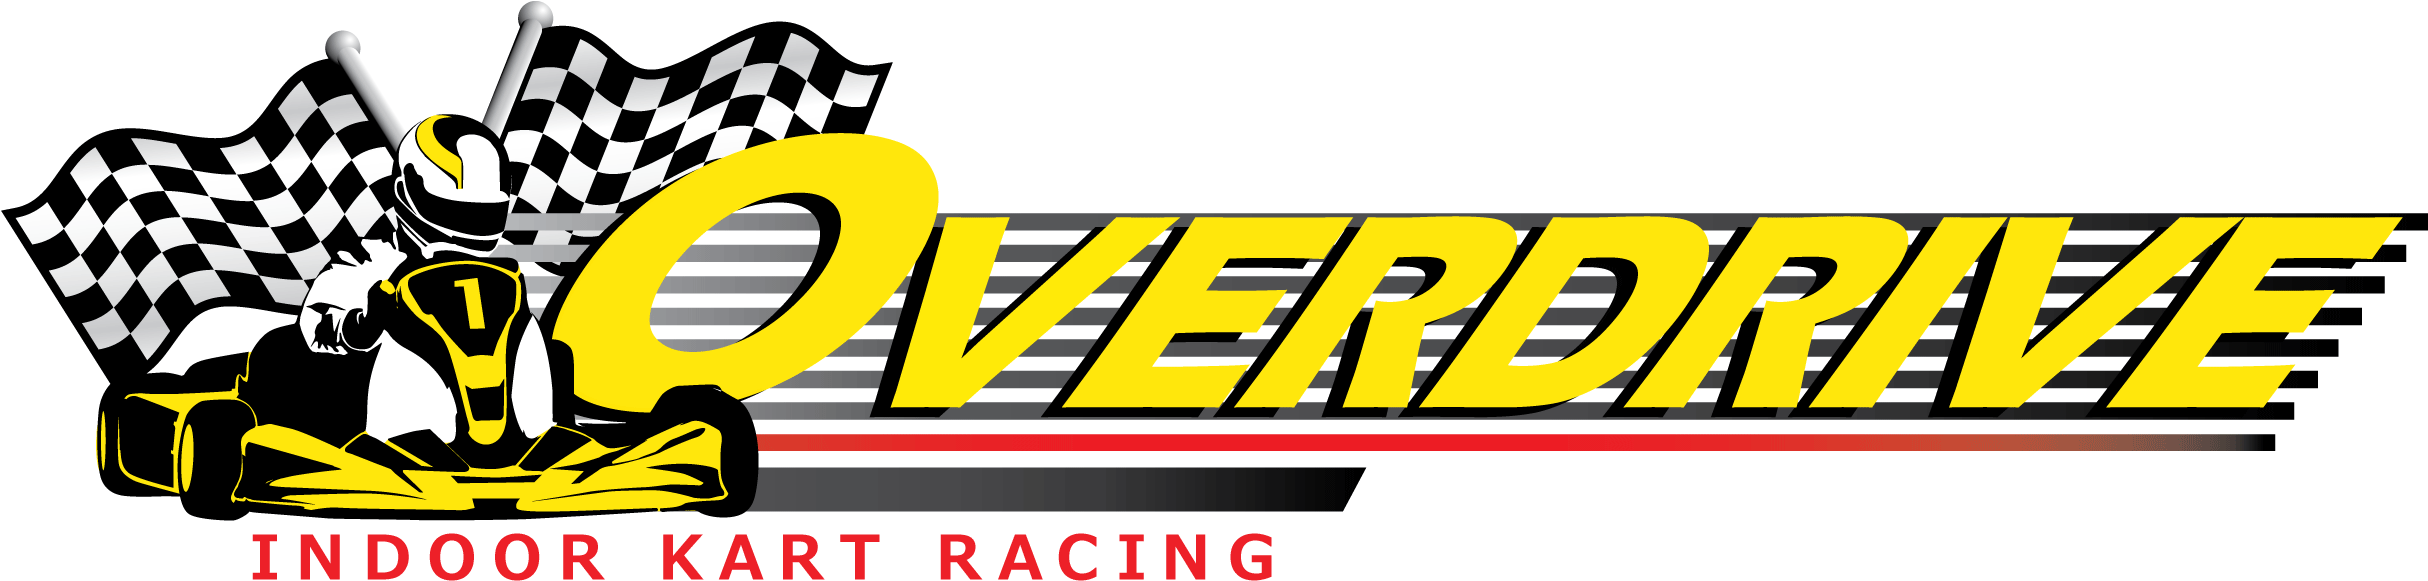 Overdrive Raceway Overdrive Raceway - Overdrive Raceway (2427x644)